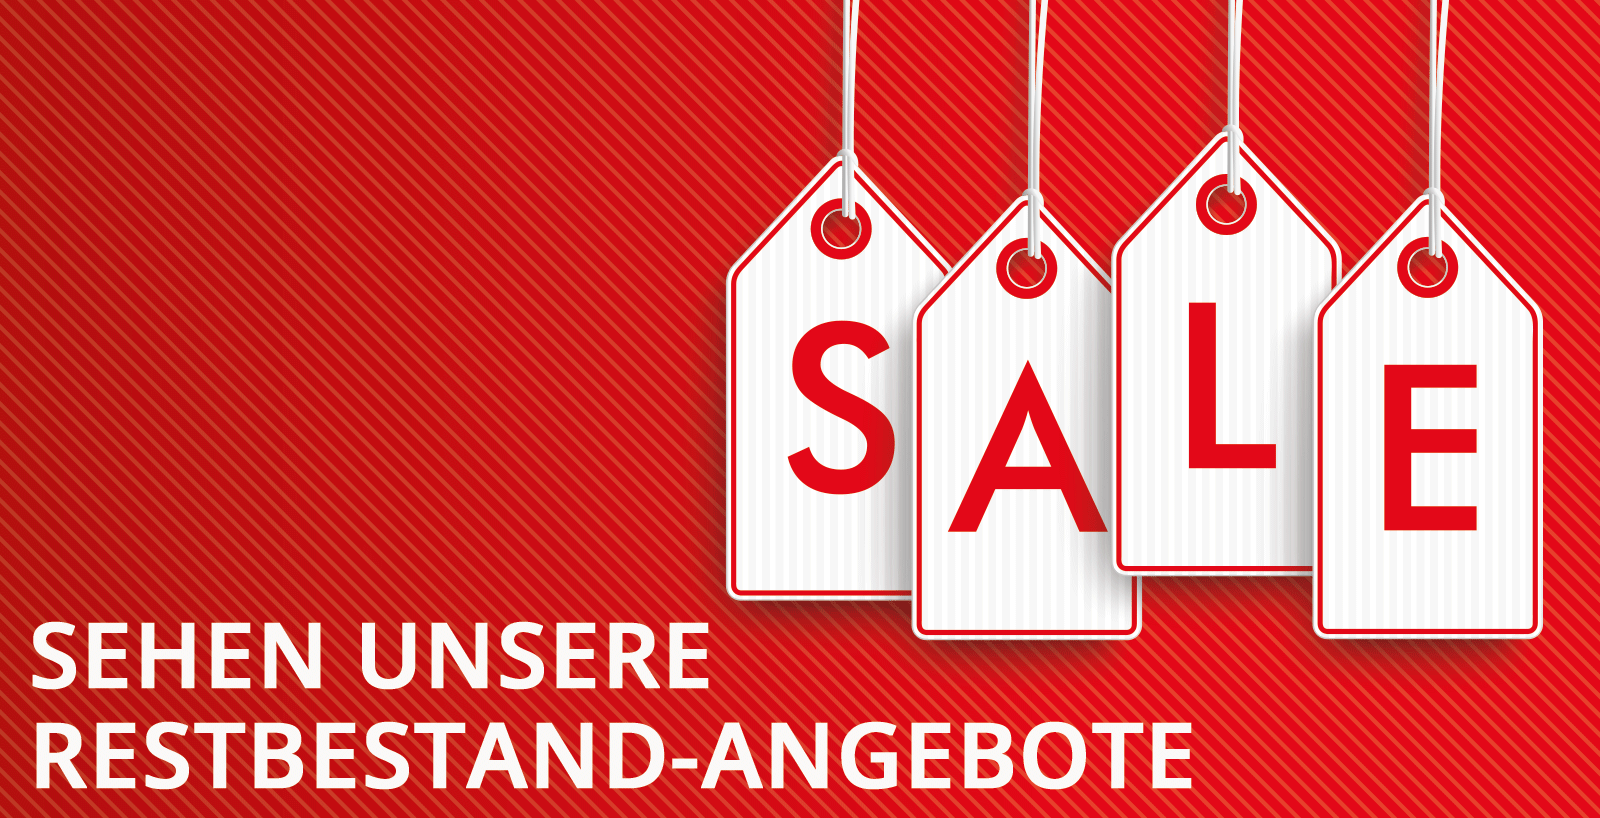 Siehe Restbeständ-Angebot von Kruizinga.de!